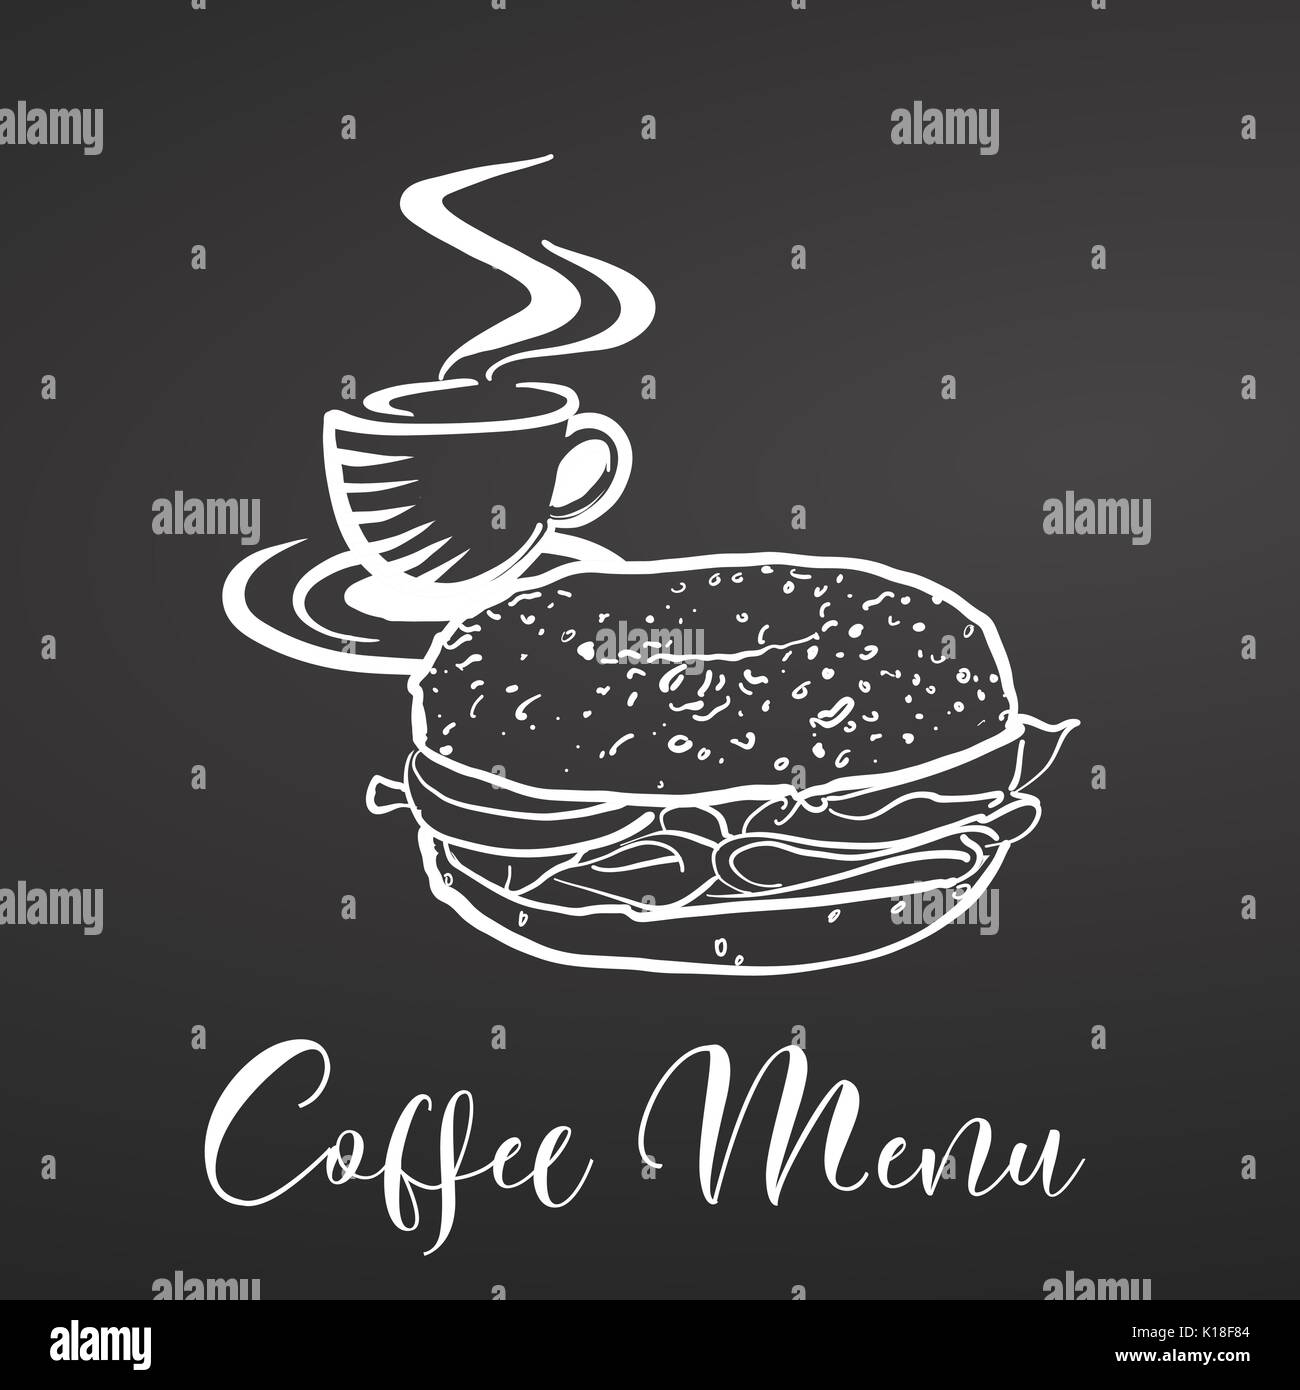 Kaffee und Bagel Menü, Kreide auf Tafel. Hand gezeichnet Essen und Beschriftung. Schwarz und Weiß. Stock Vektor